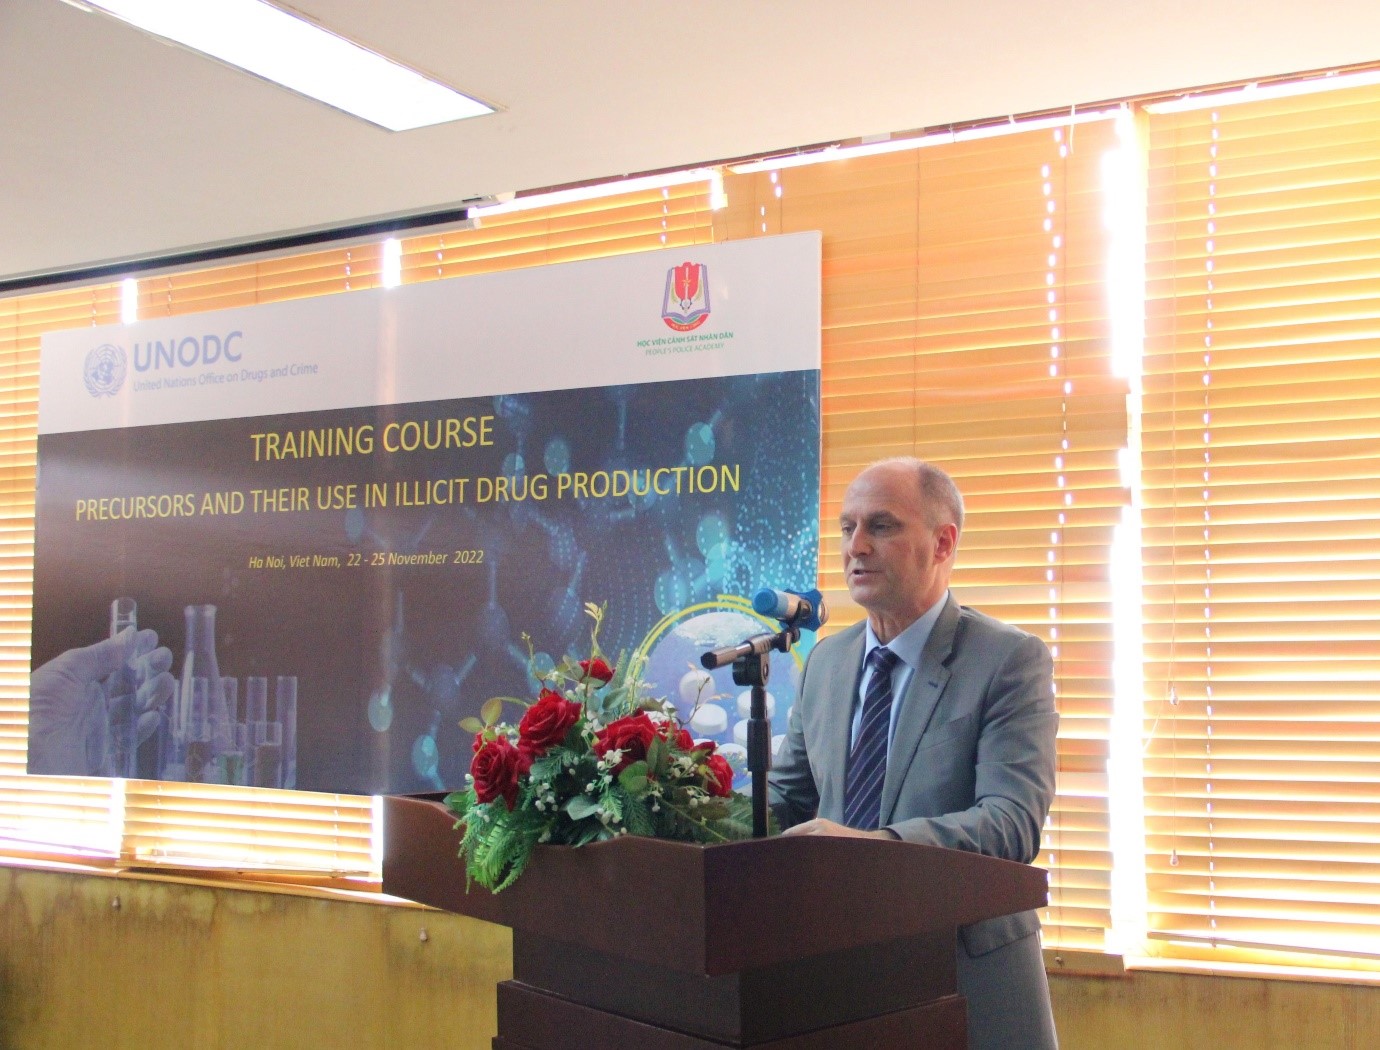 Ông Reiner Pungs, Quản lý Chương trình phòng, chống mua bán bất hợp pháp tiền chất - UNODC khu vực Đông Nam Á và Thái Bình Dương